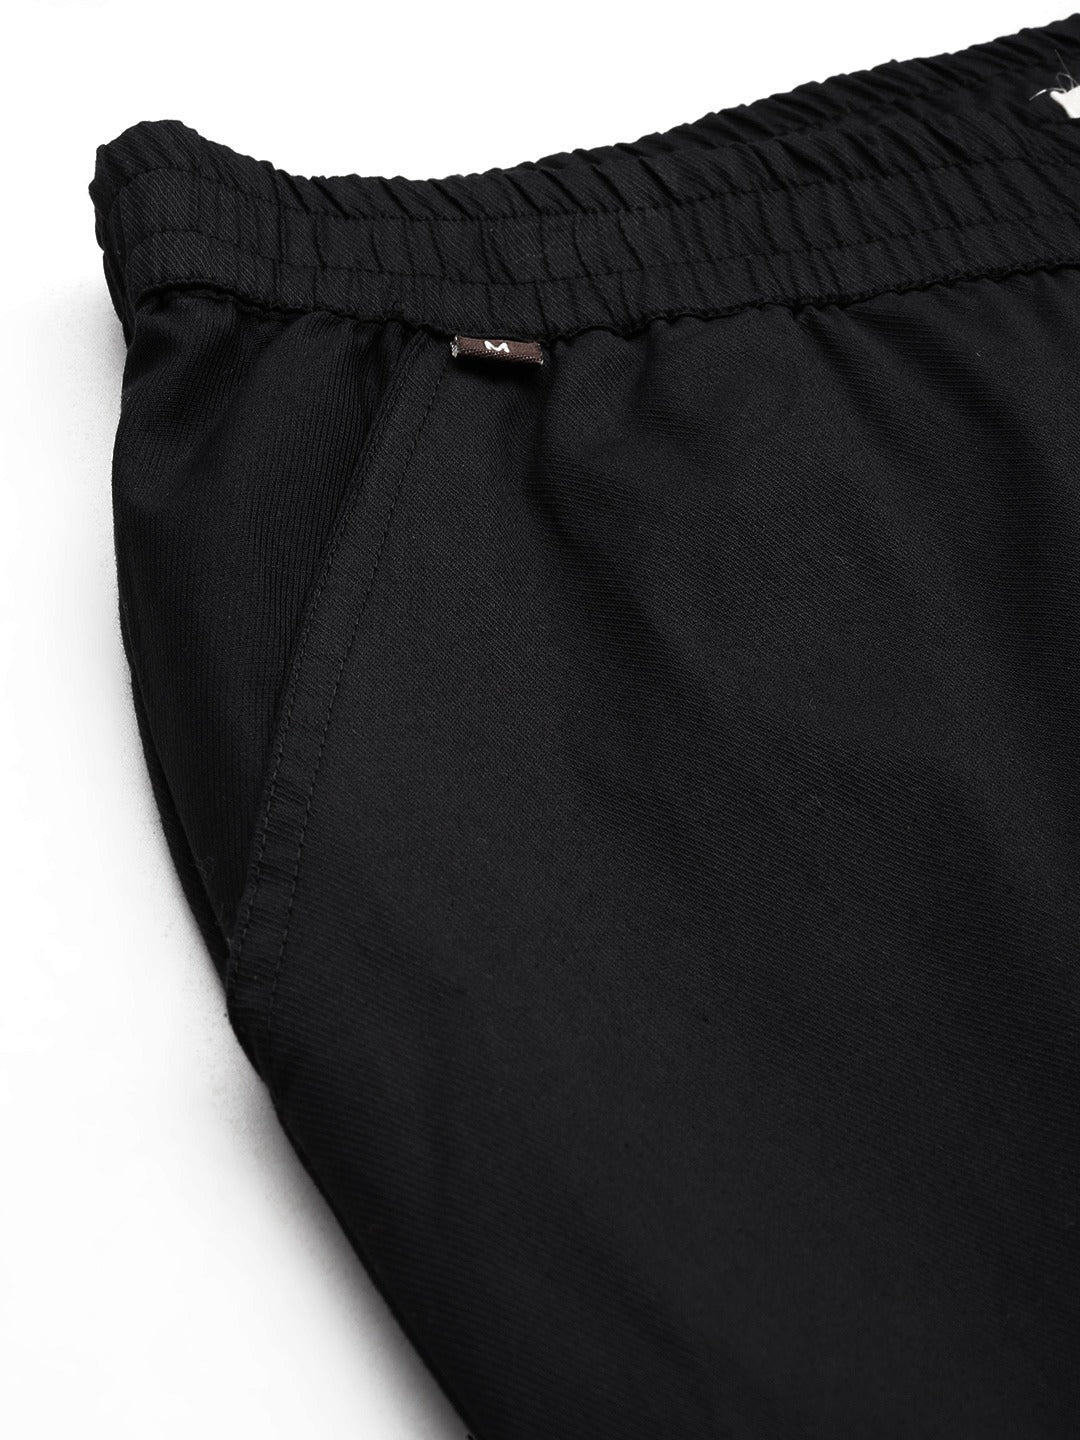 Cotton Lycra Fabric Black Color Trouser